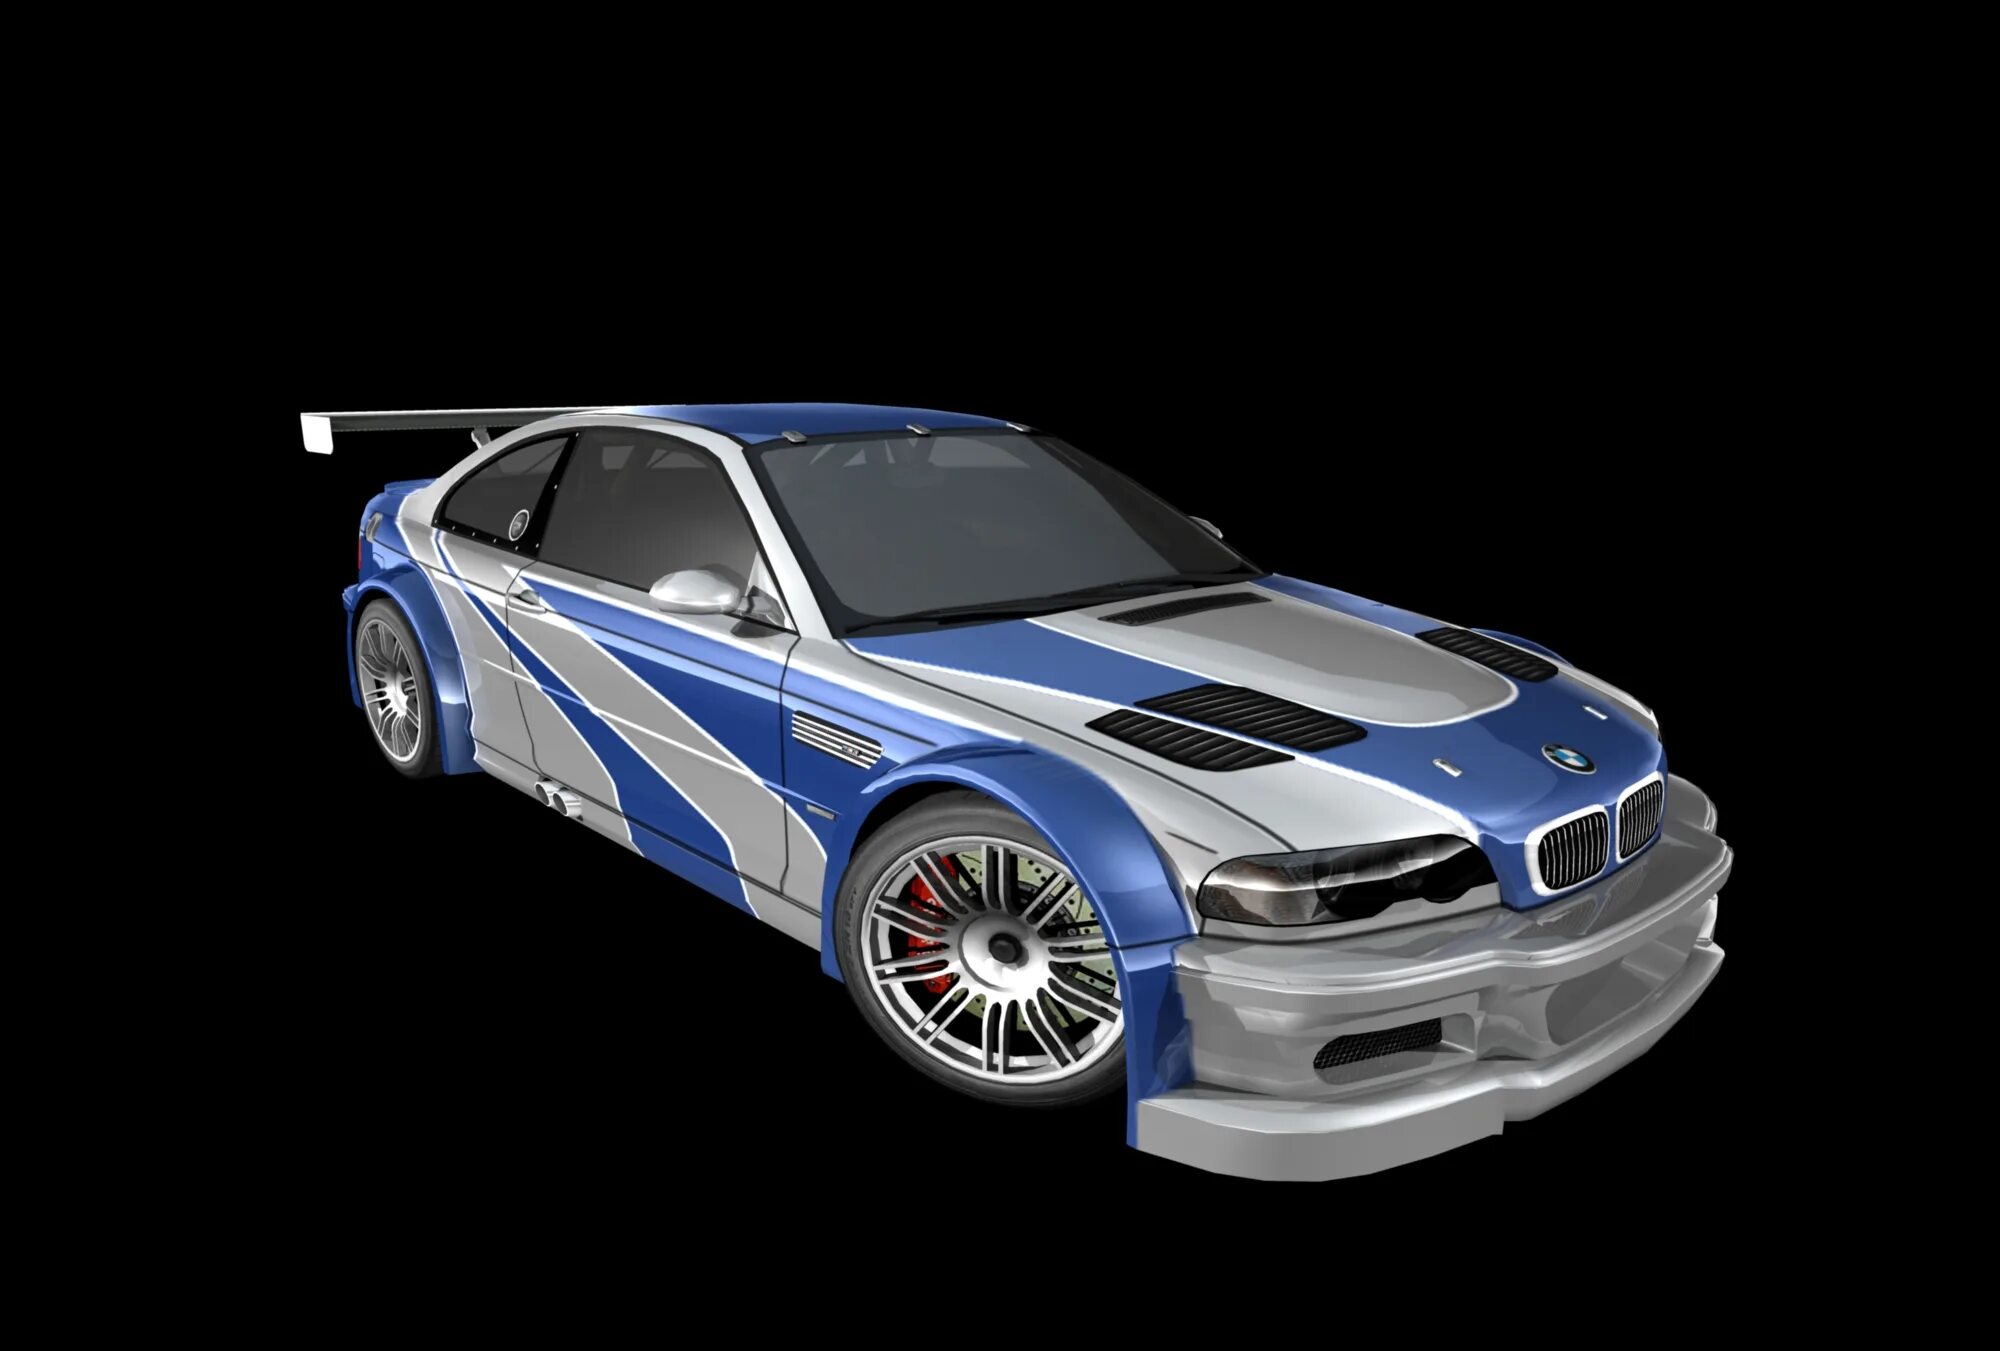 M3 nfs mw. BMW m3 GTR. BMW m3 e46 GTR. BMW m3 GTR 2001. BMW m3 e46 GTR Razor.